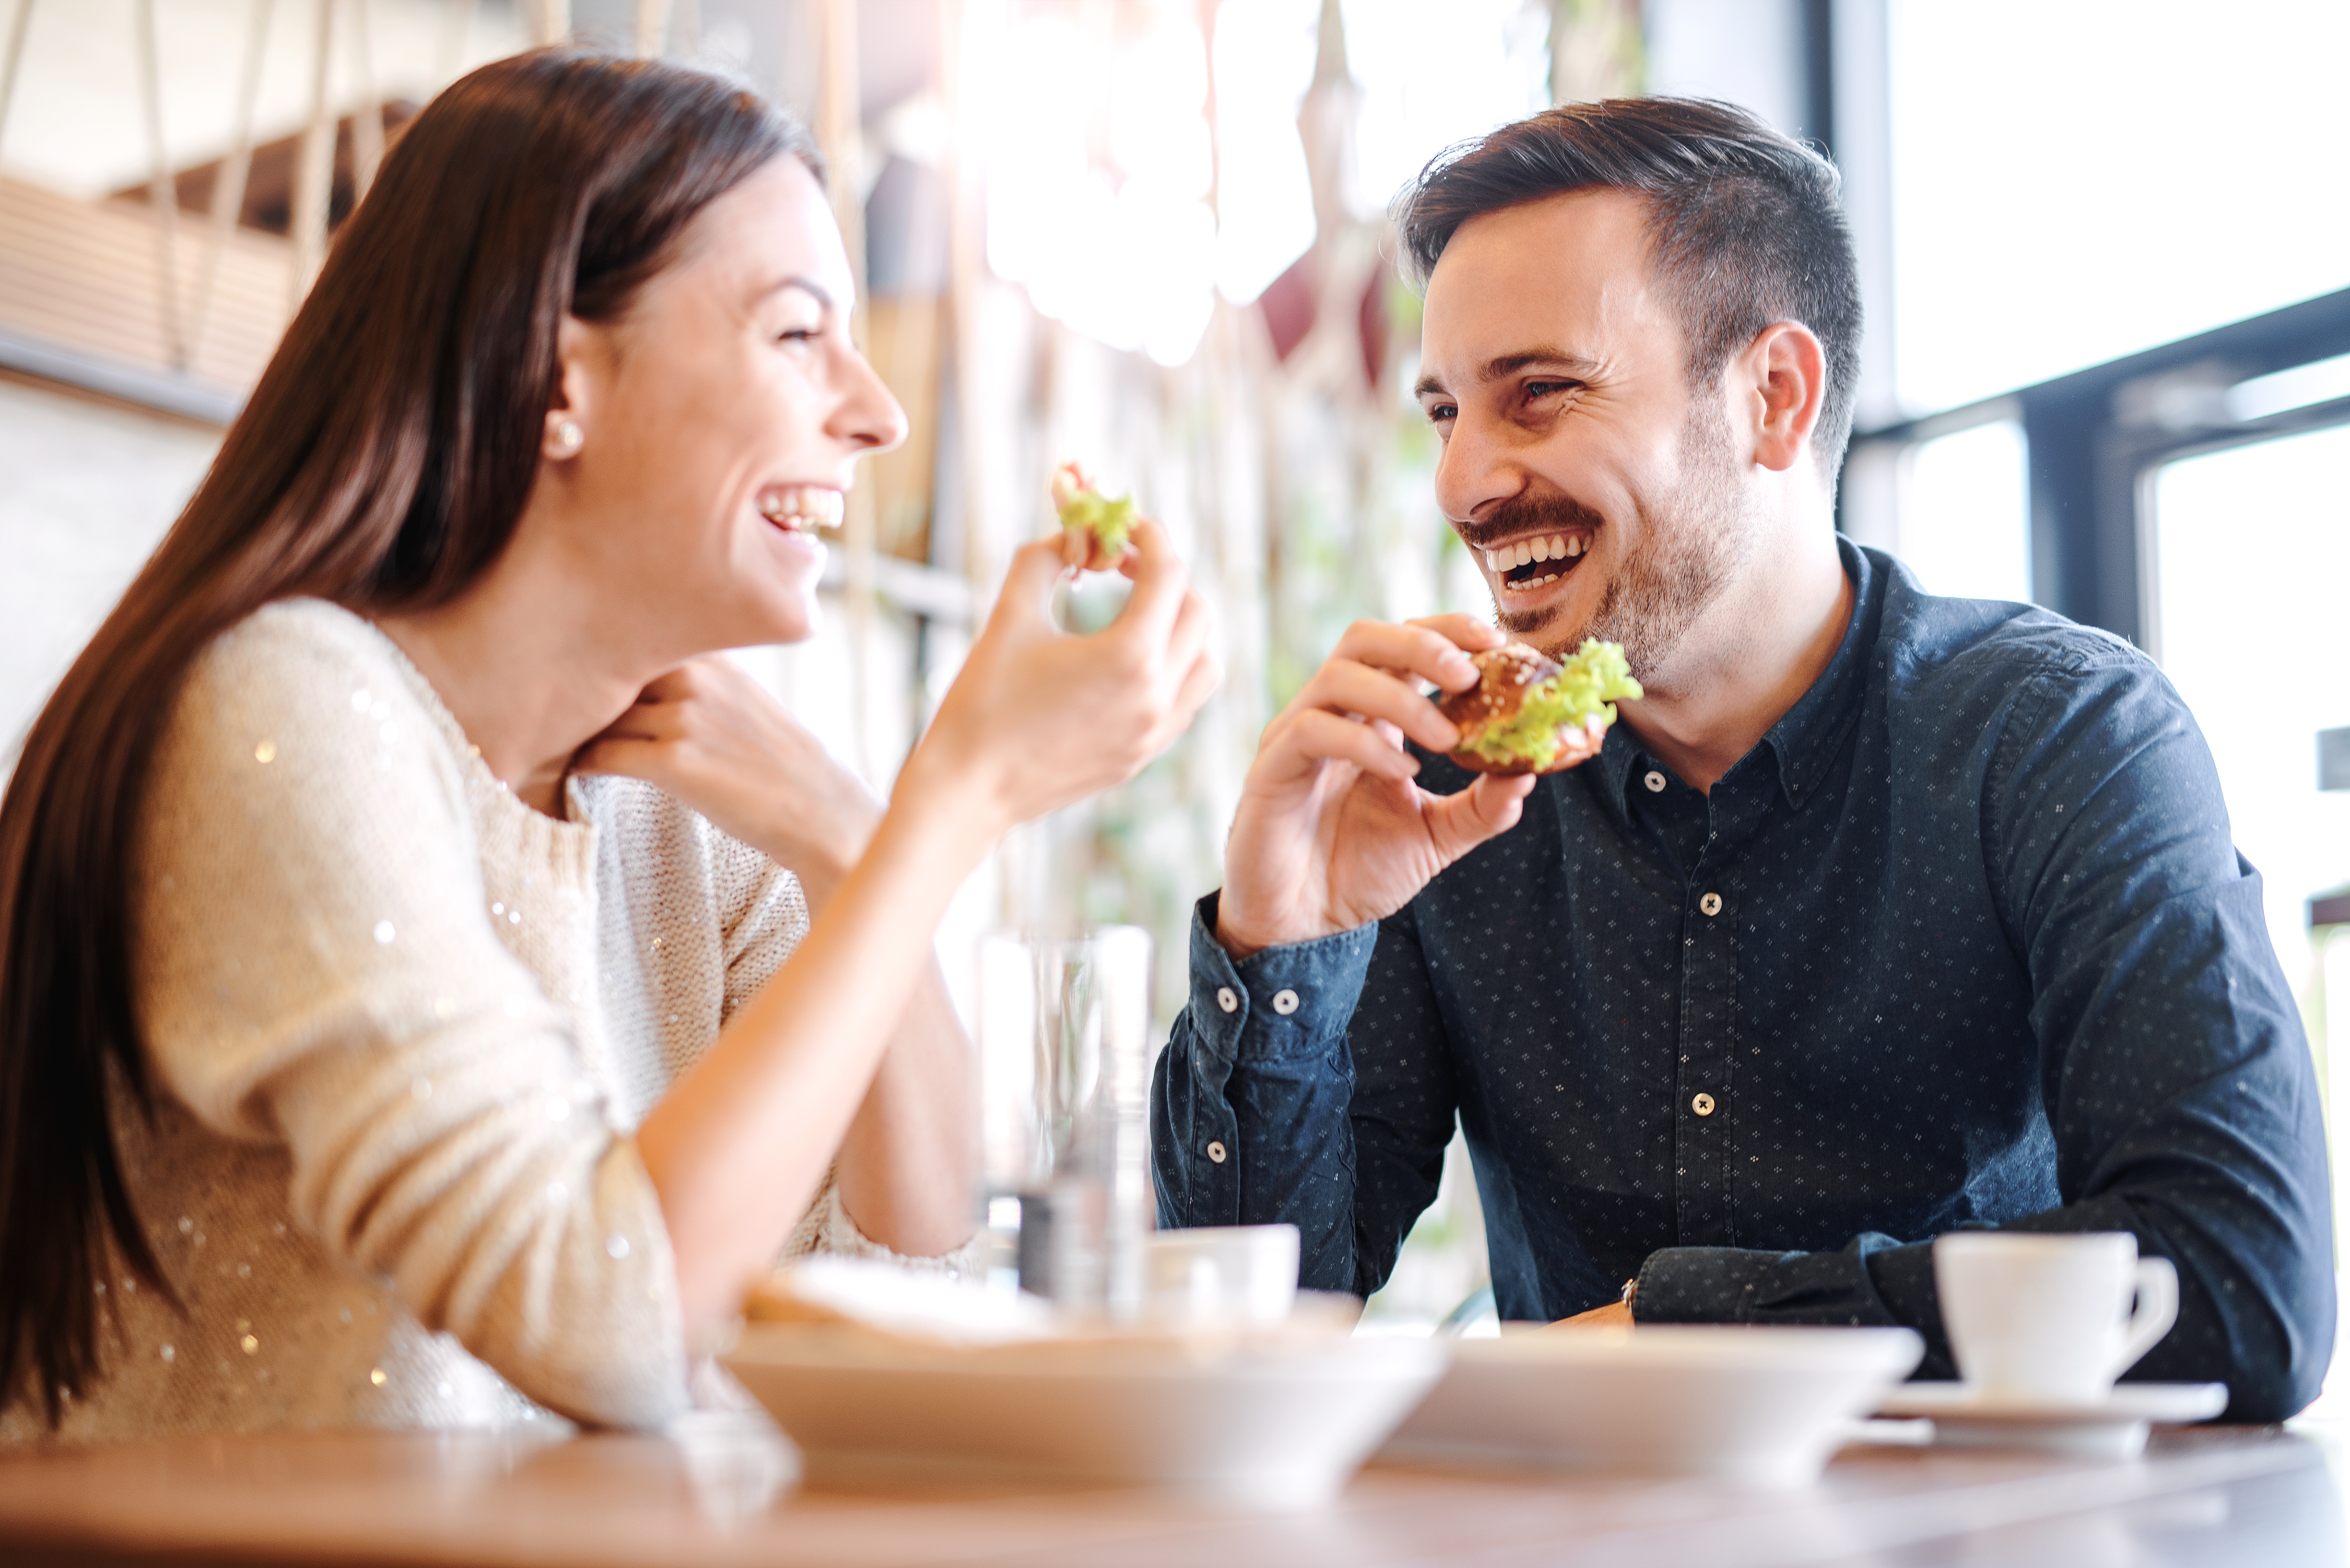 Un couple qui rit en prenant un repas ensemble | Source : Shutterstock